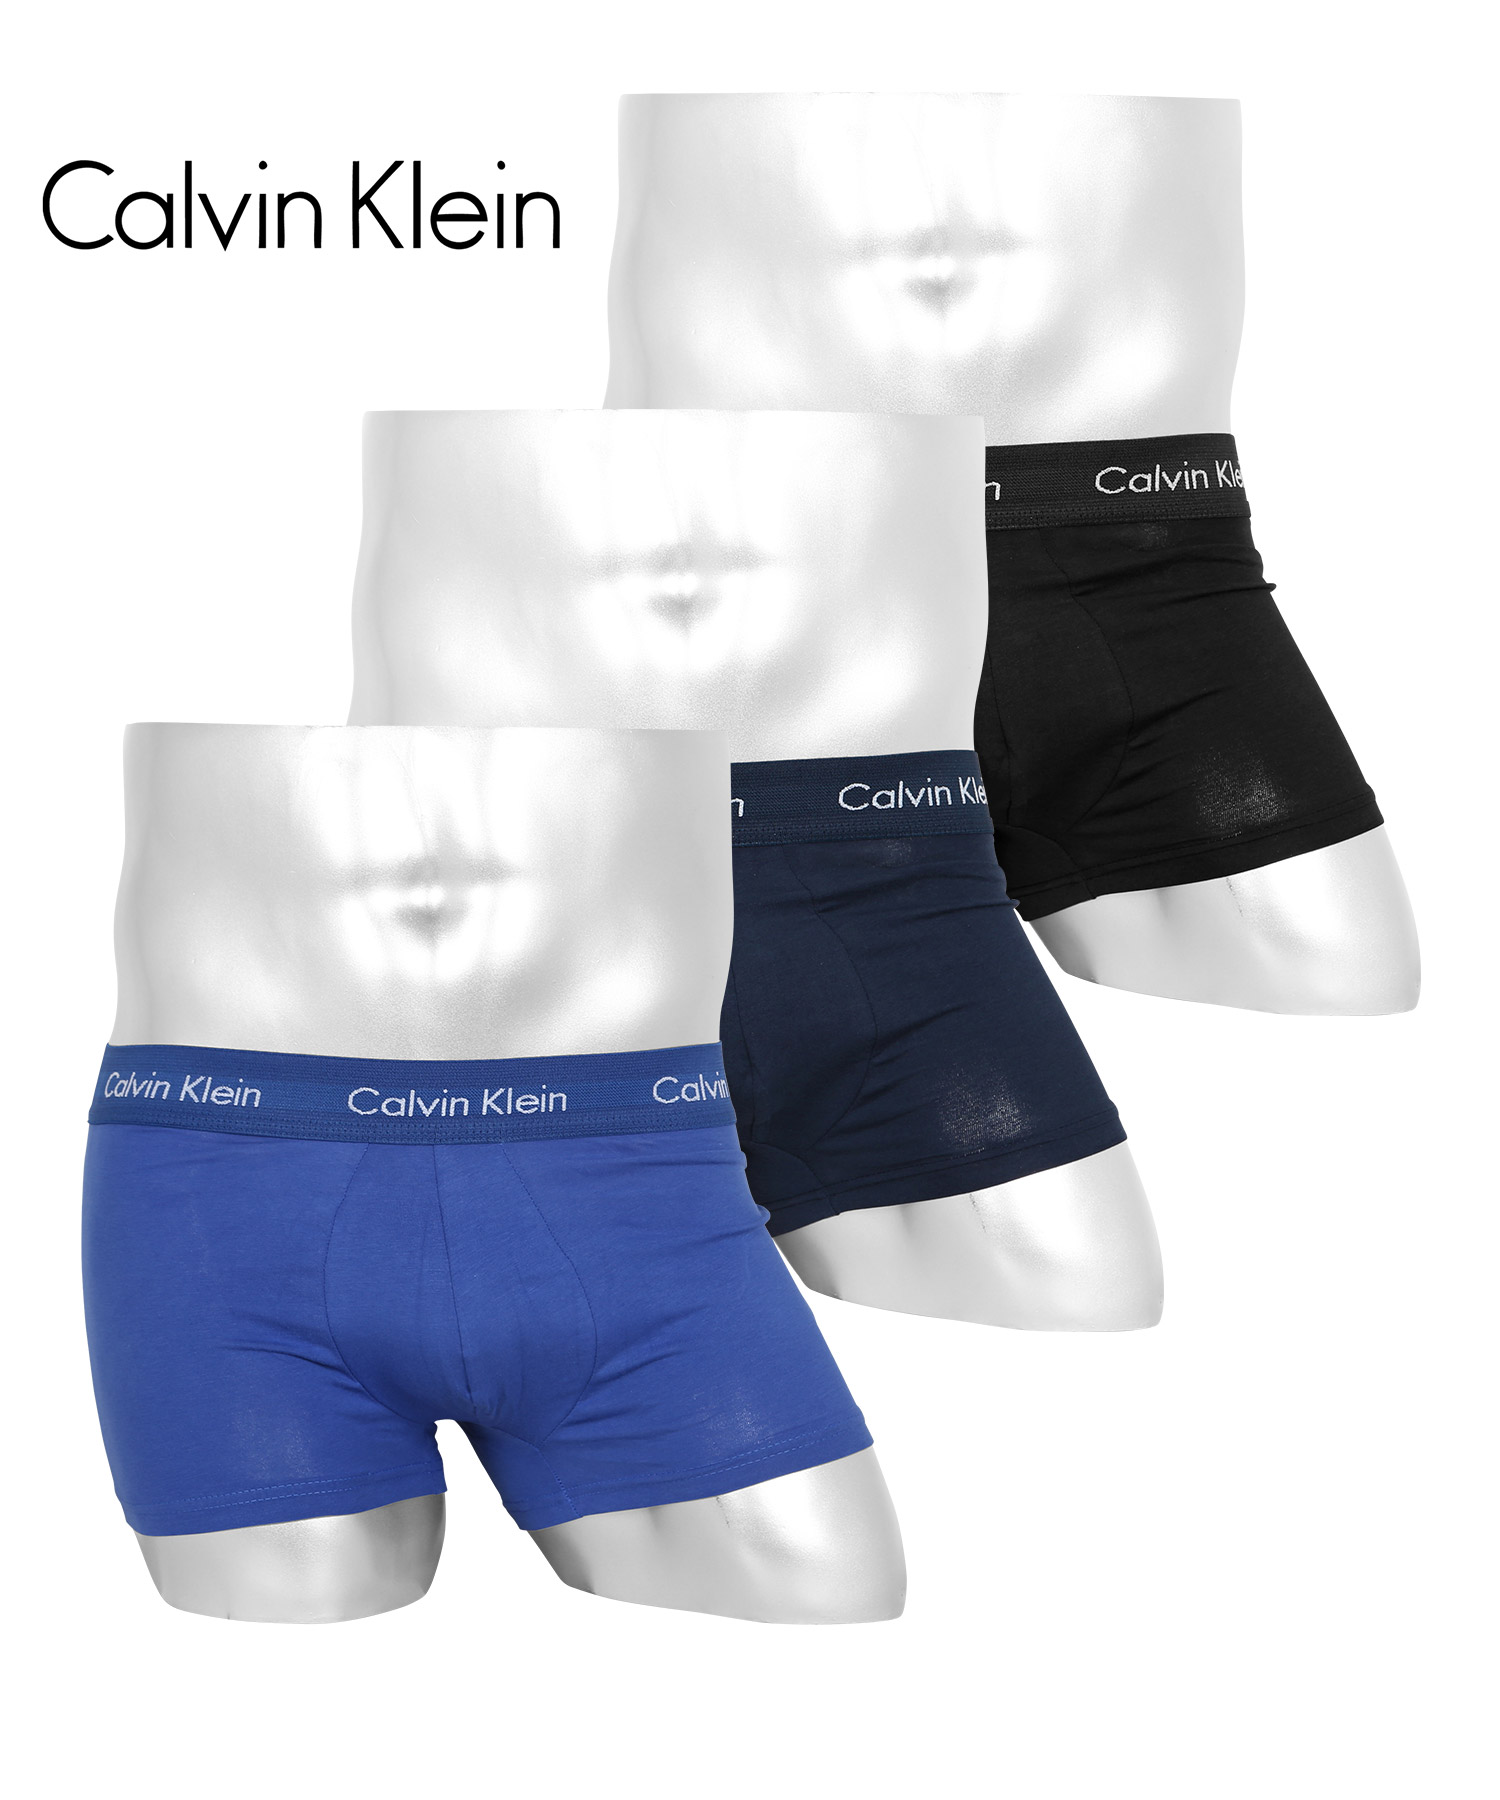 カルバンクライン ボクサーパンツ 3枚セット 3枚組 ローライズ ロング Calvin Klein メンズ アンダーウェア 男性下着 CK 高級  ハイブランド